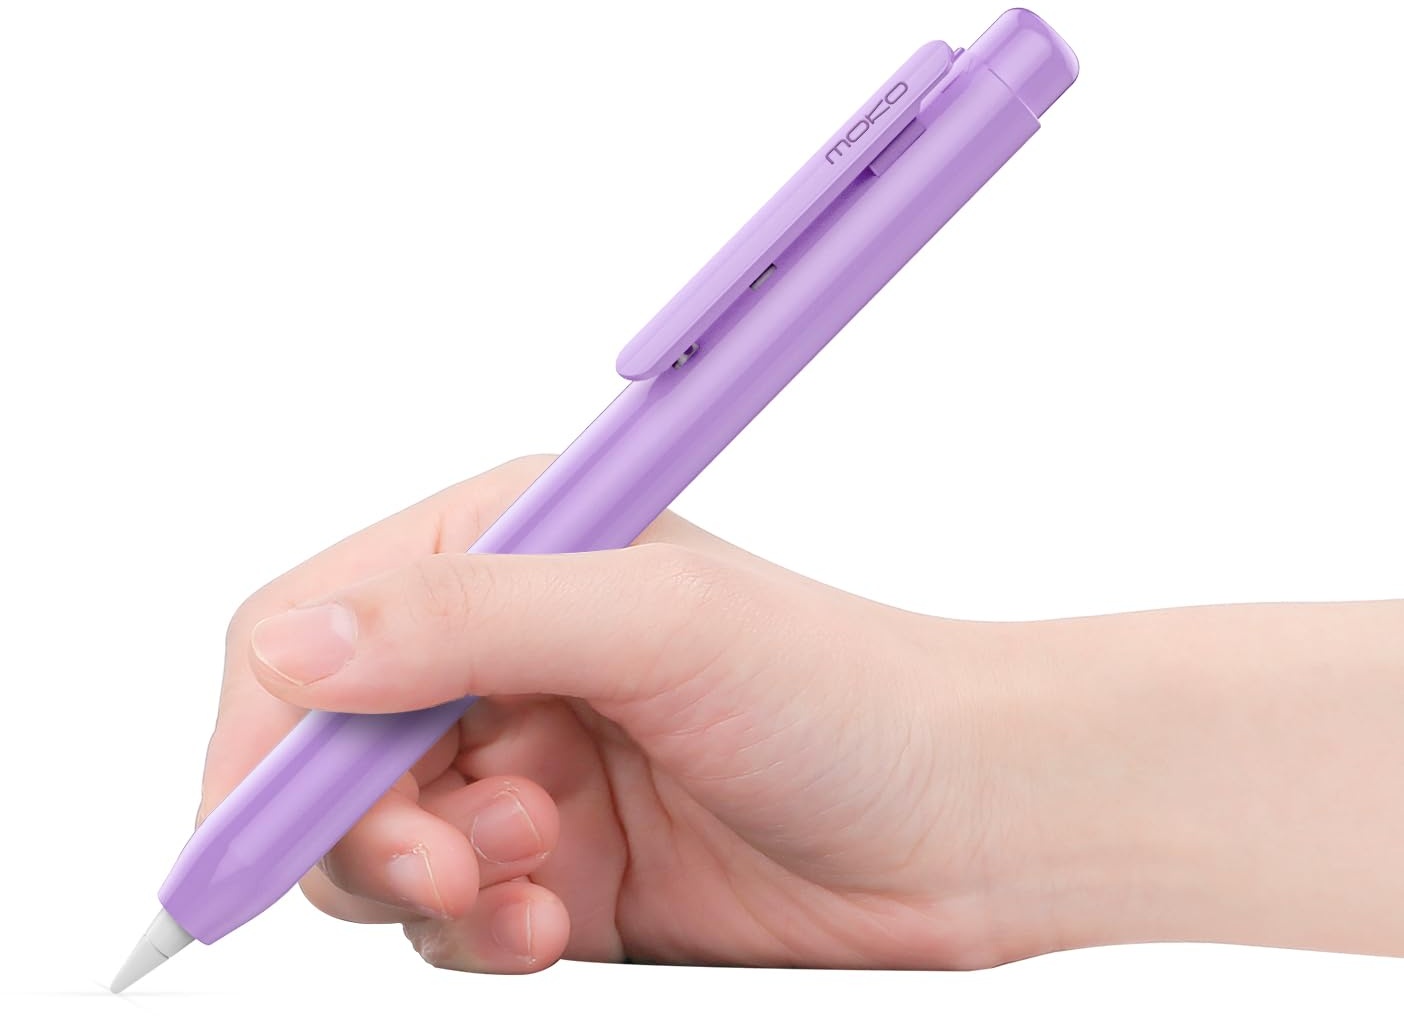 MoKo Hülle Kompatibel mit Apple Pencil 1. Generation, Retractable Ausziehbare Schutzhülle mit Apple Pencil Hülle, Stifthalter mit Stabilem Clip, rutschfeste Einfarbige Stifthülle, Violett